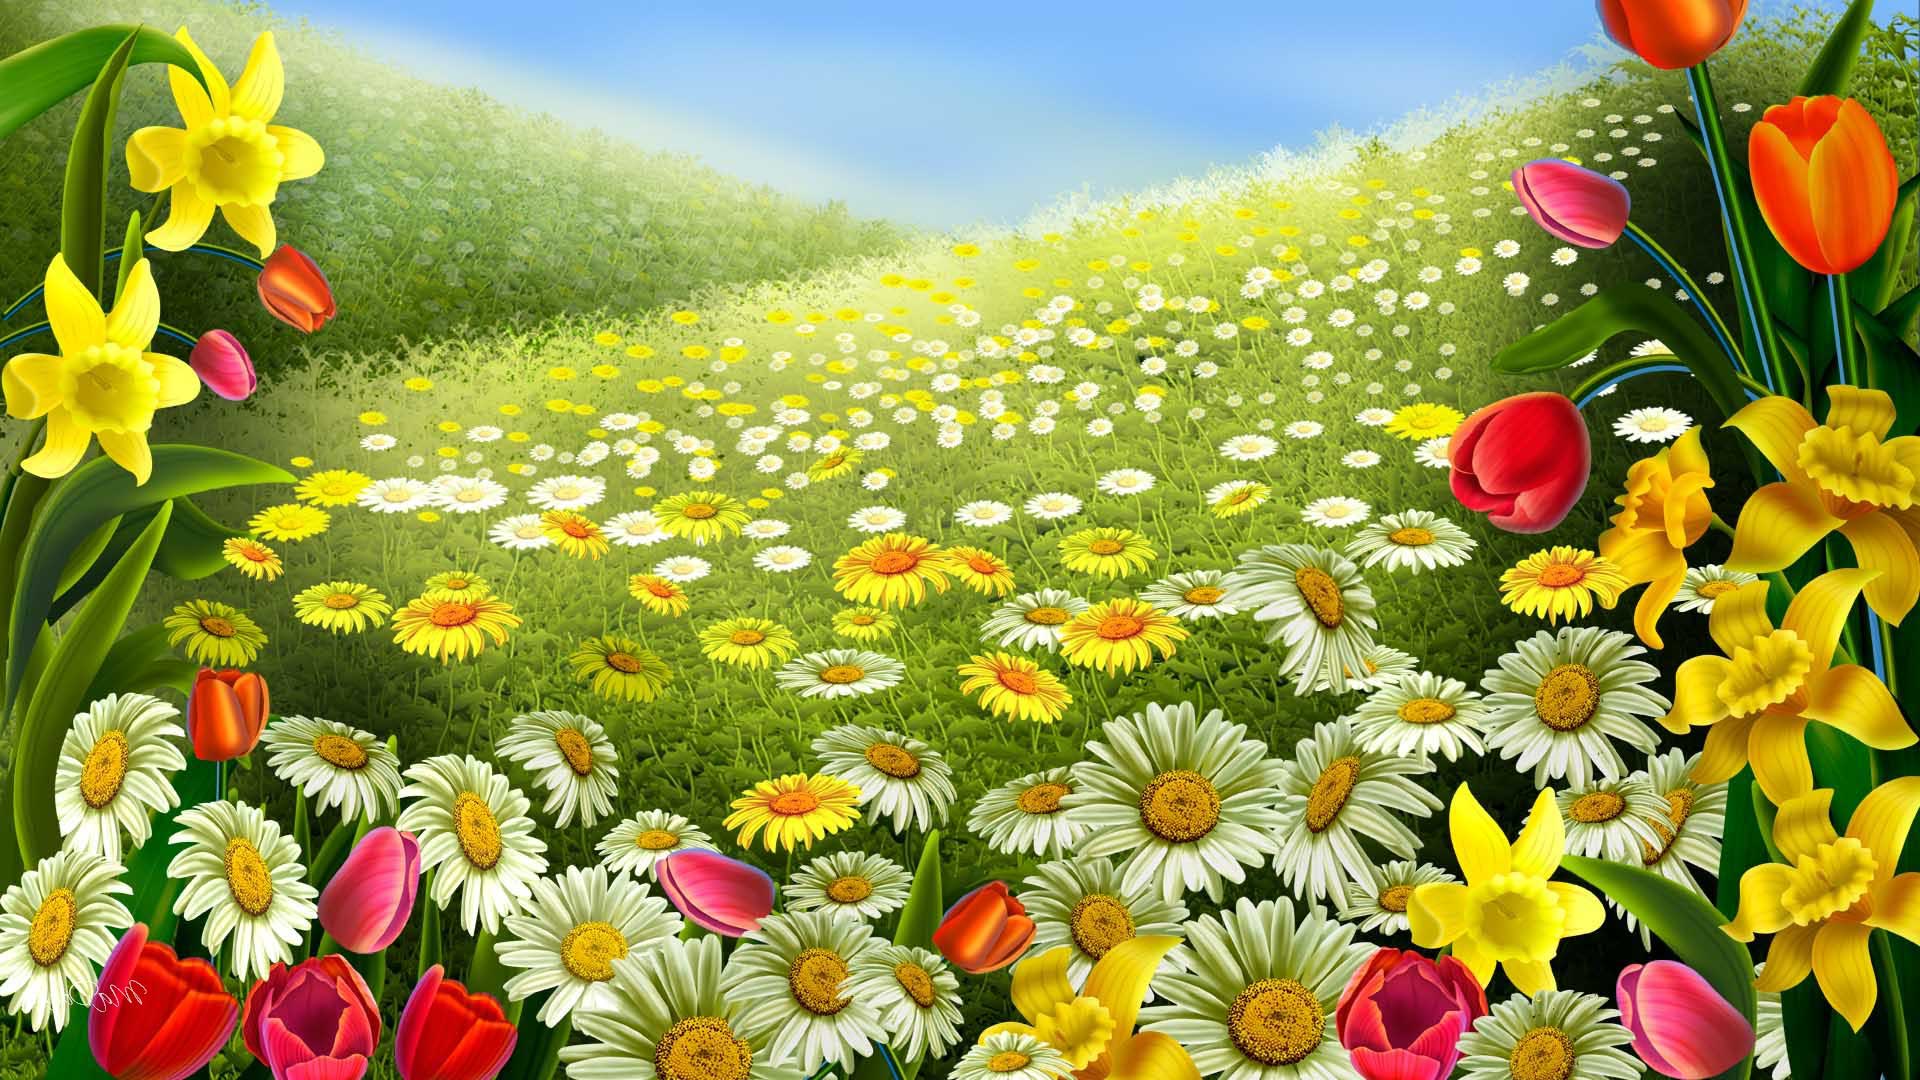 Colorful flowers Spring desktop background